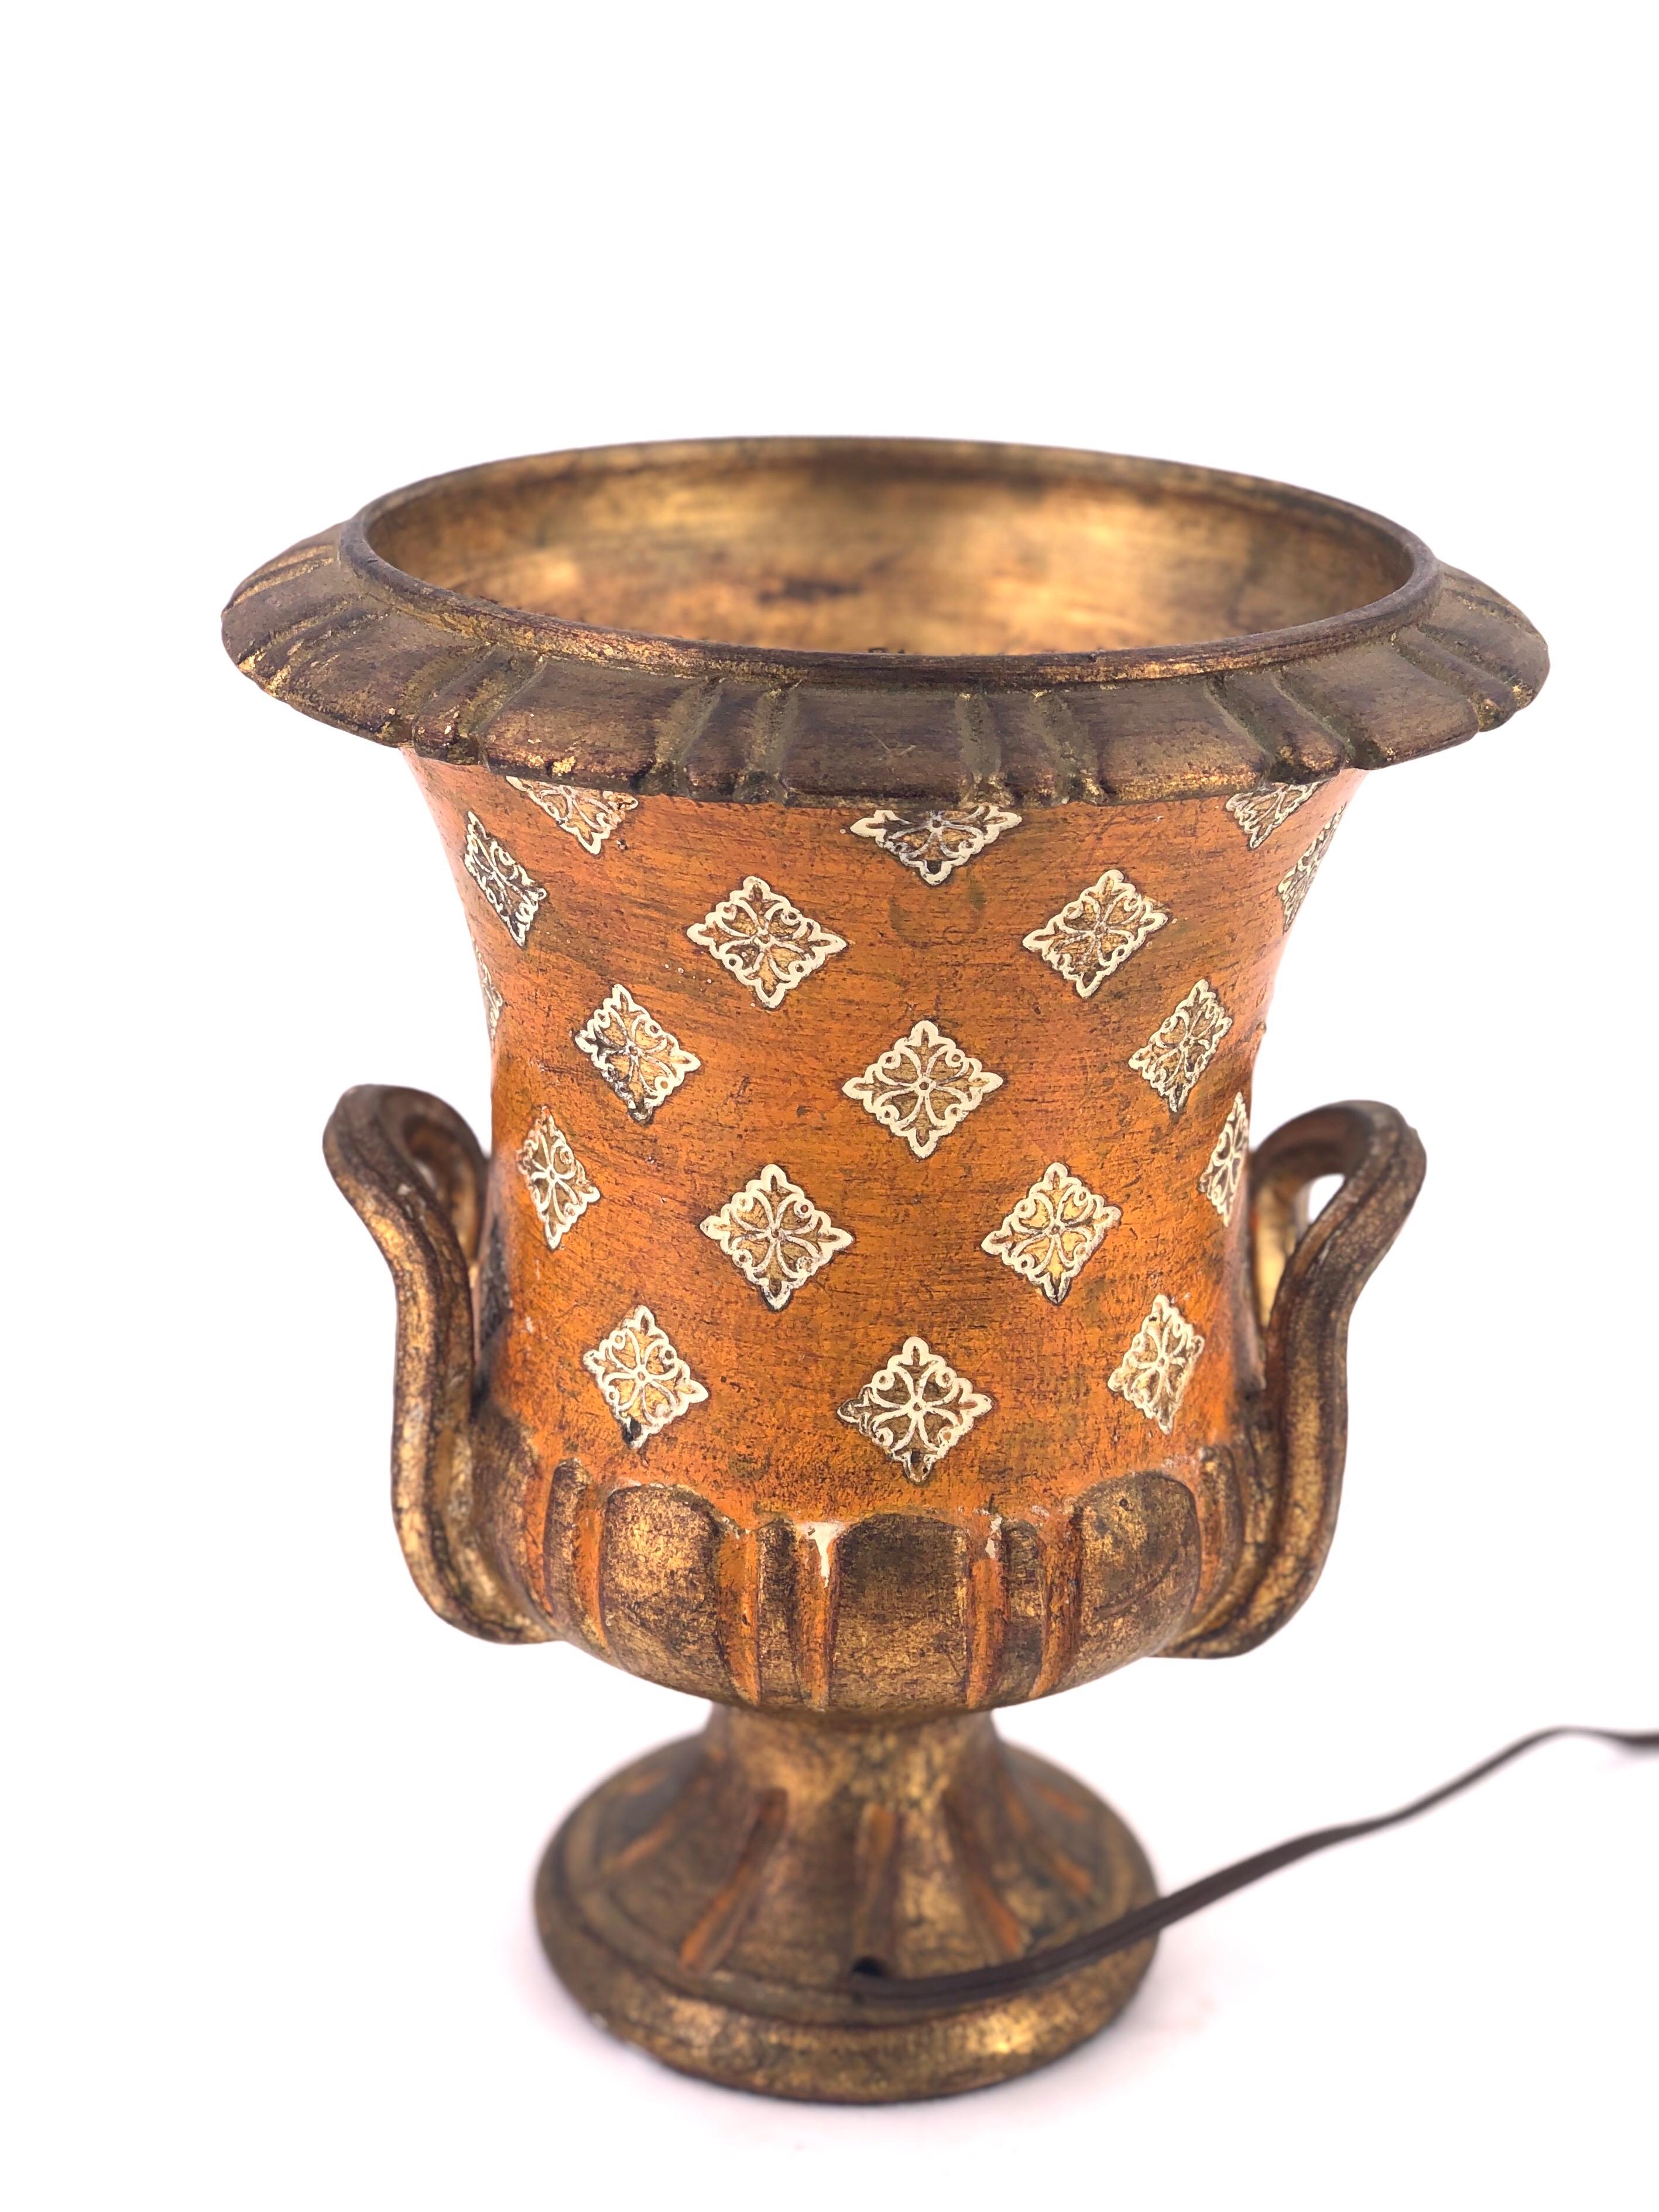 Élégante et magnifique lampe de table italienne en céramique, datant des années 1950, avec une finition en feuille d'or, et recousue à la main.